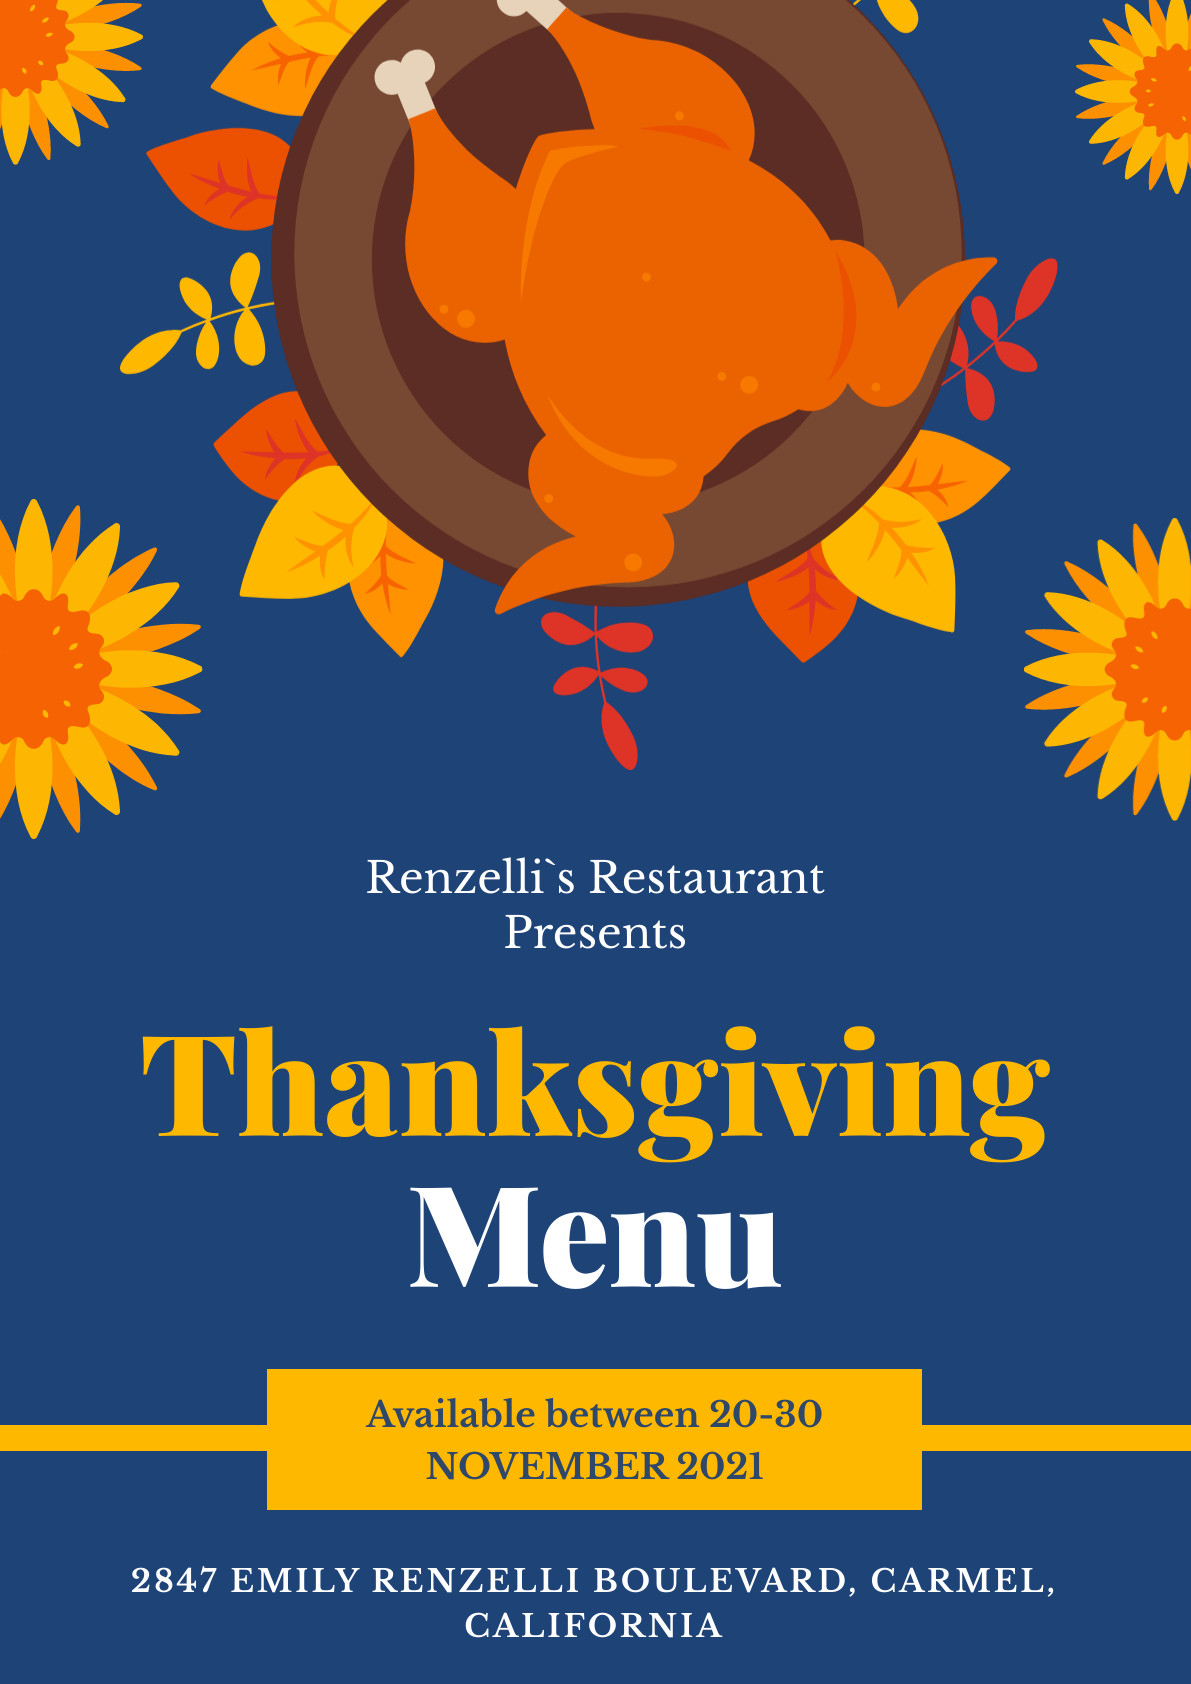 Renzelli Restaurant Thanksgiving Menu Poster 1191x1684